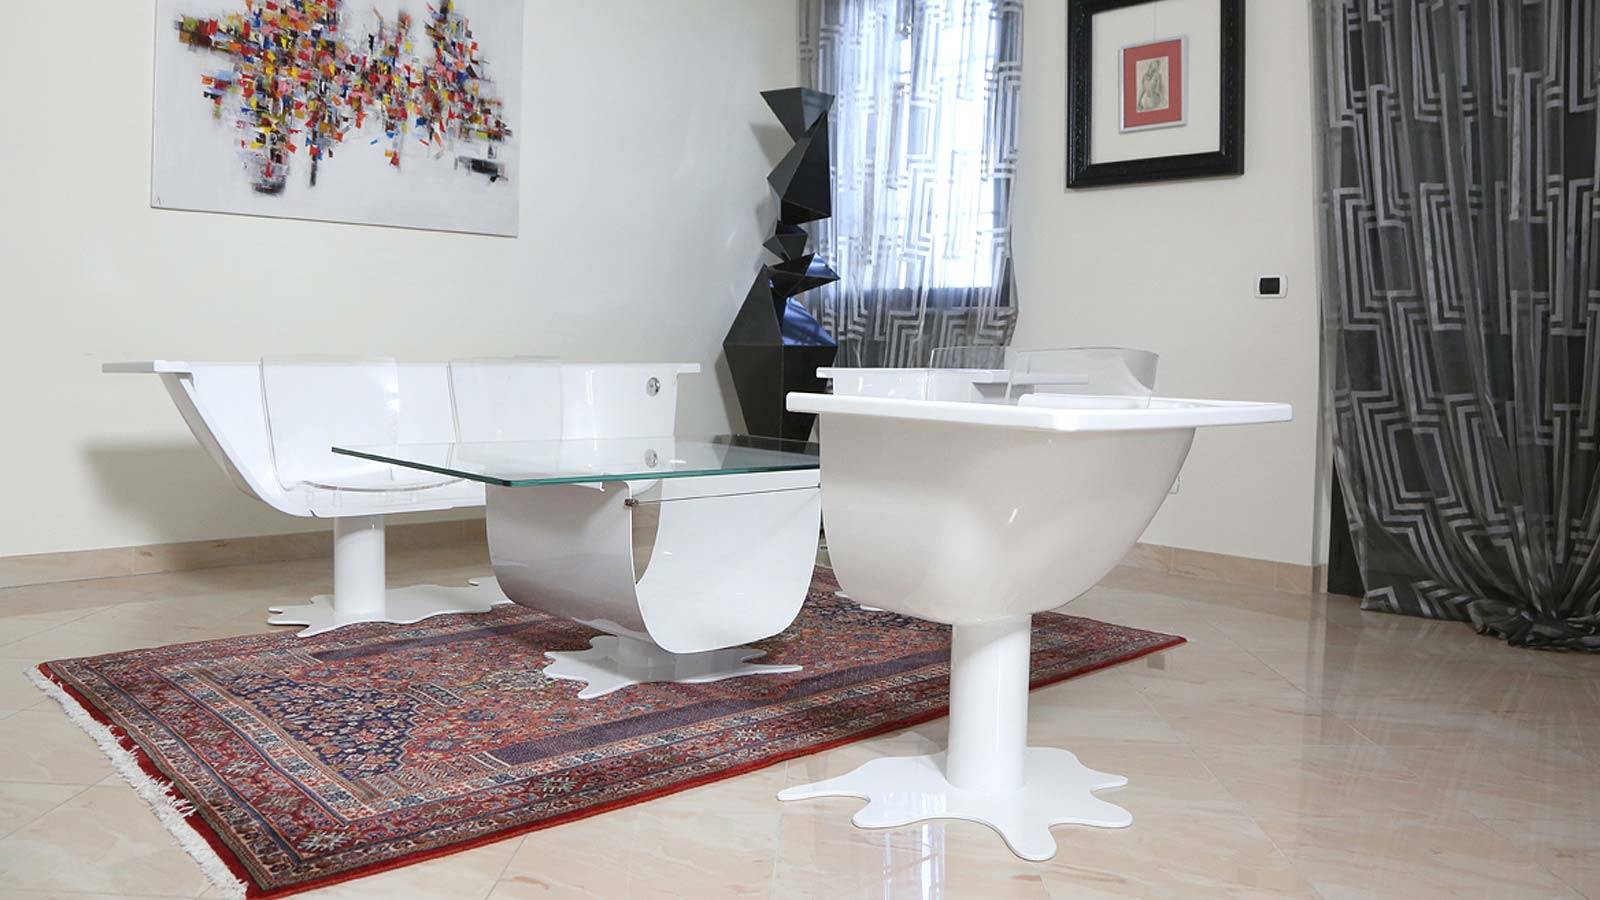 Oggetti strani per la casa una vasca da bagno in salotto for Amazon oggetti per la casa